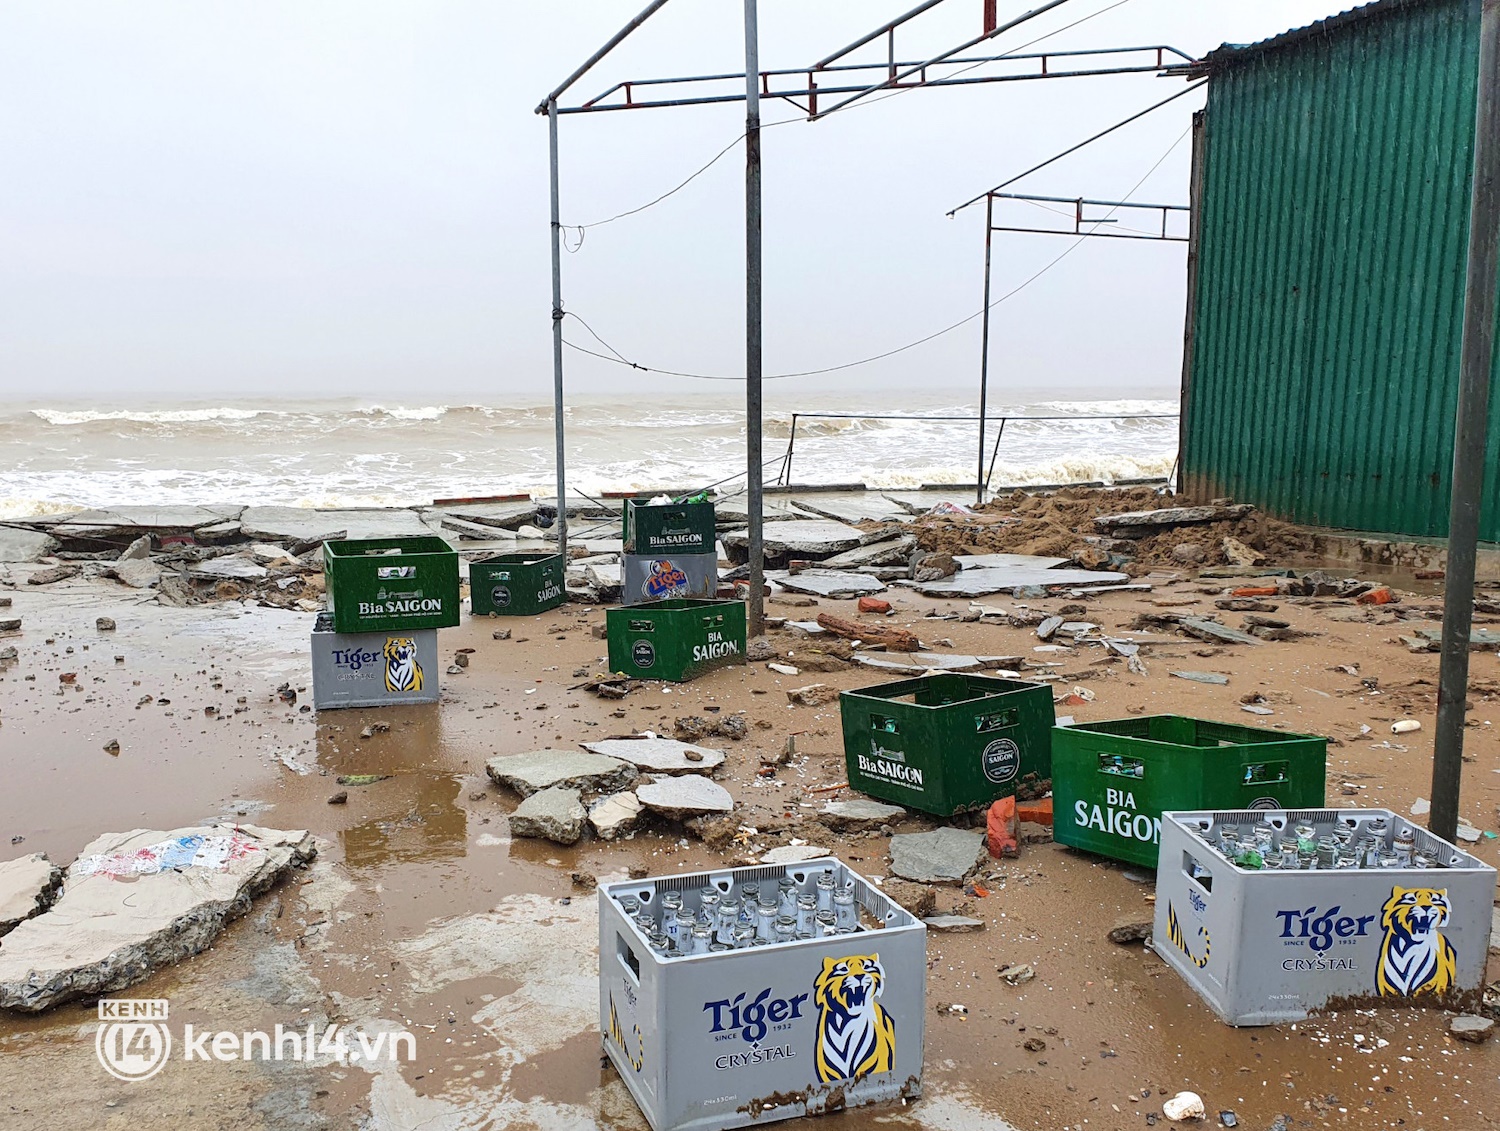 Cận cảnh kè biển tiền tỷ ở Nghệ An bị sóng đánh vỡ nát sau bão - Ảnh 10.